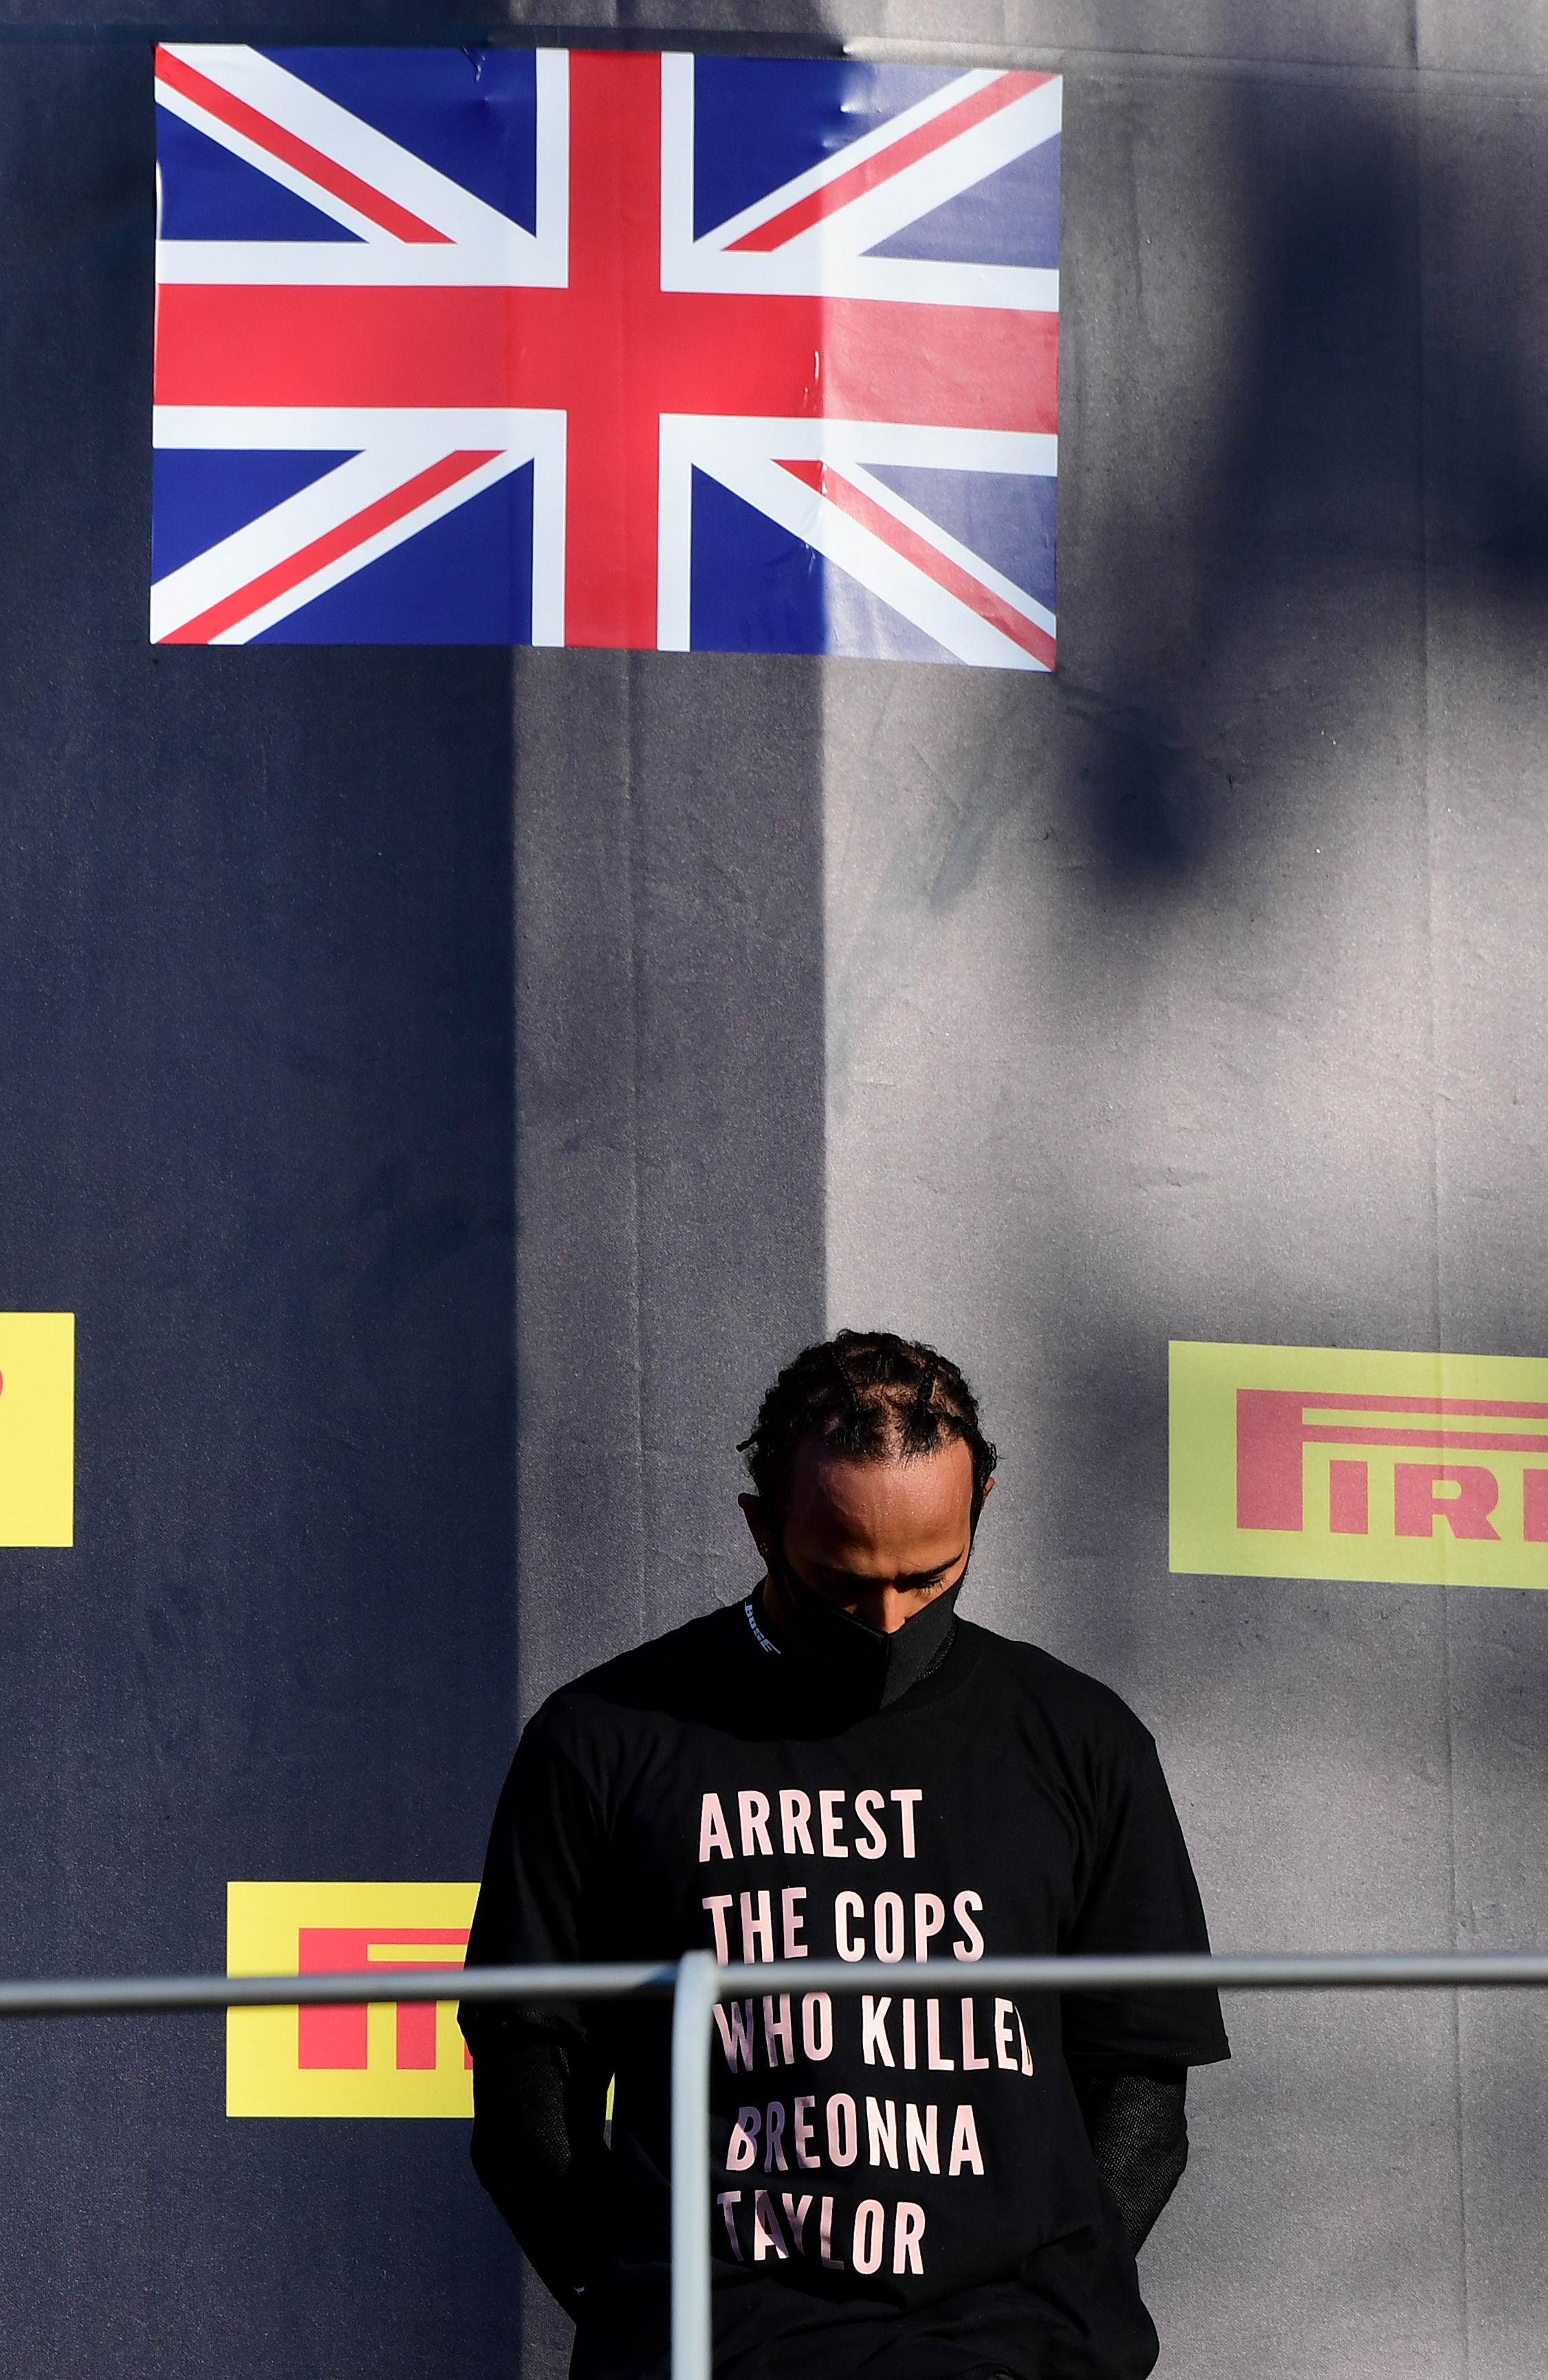 O protesto no GP da Toscana gerou a ira da FIA, que proibiu o uso de camisas com manifestações políticas no pódio (Foto: Getty Images)